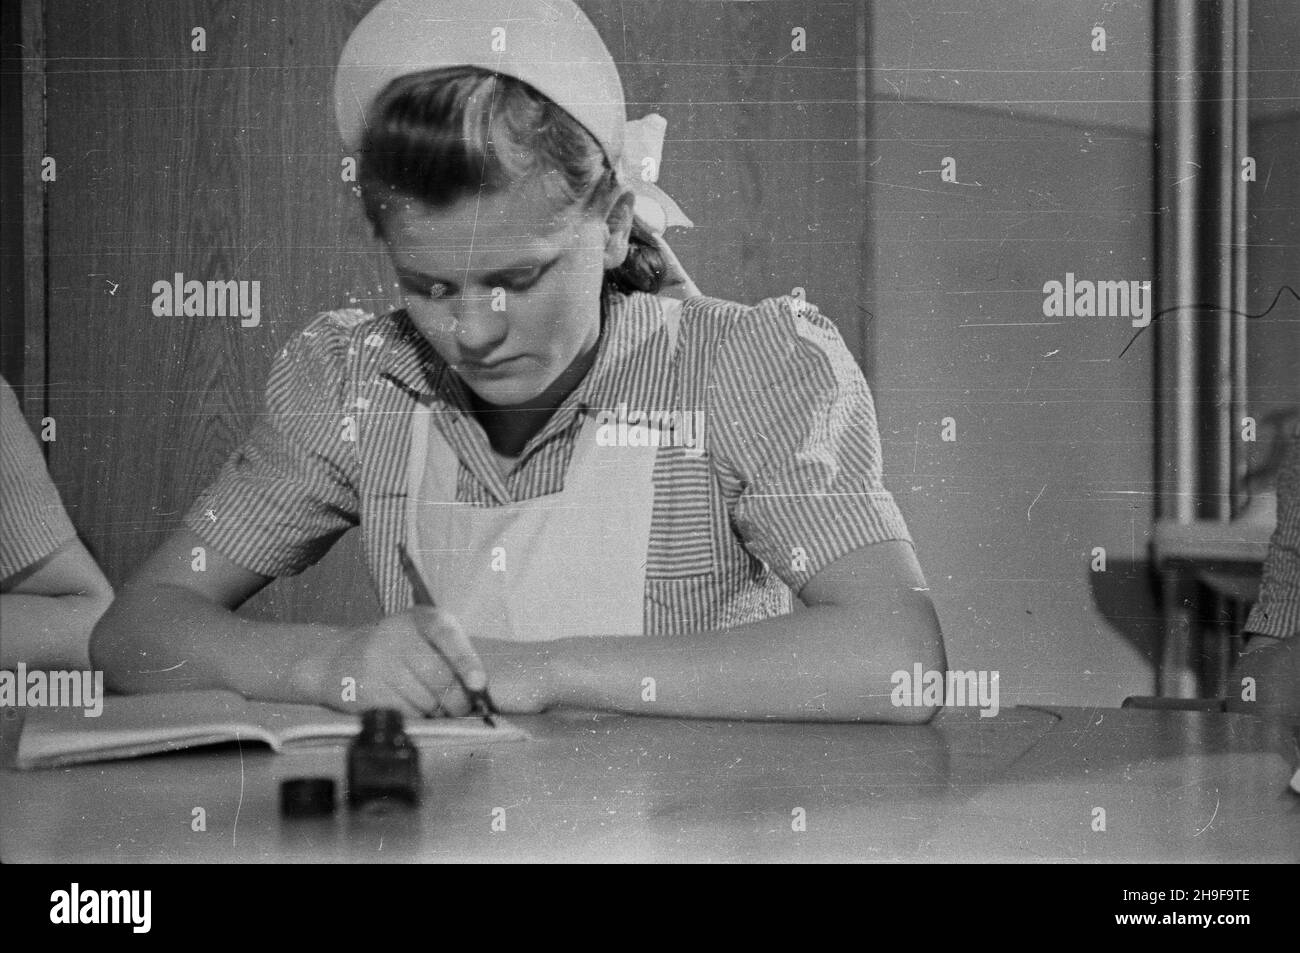 Polska, 1948. Szko³a pielêgniarska. Dok³adny miesi¹c i dzieñ wydarzenia nieustalone.  bk  PAP      Poland, 1948. A nursing school.  bk  PAP Stock Photo